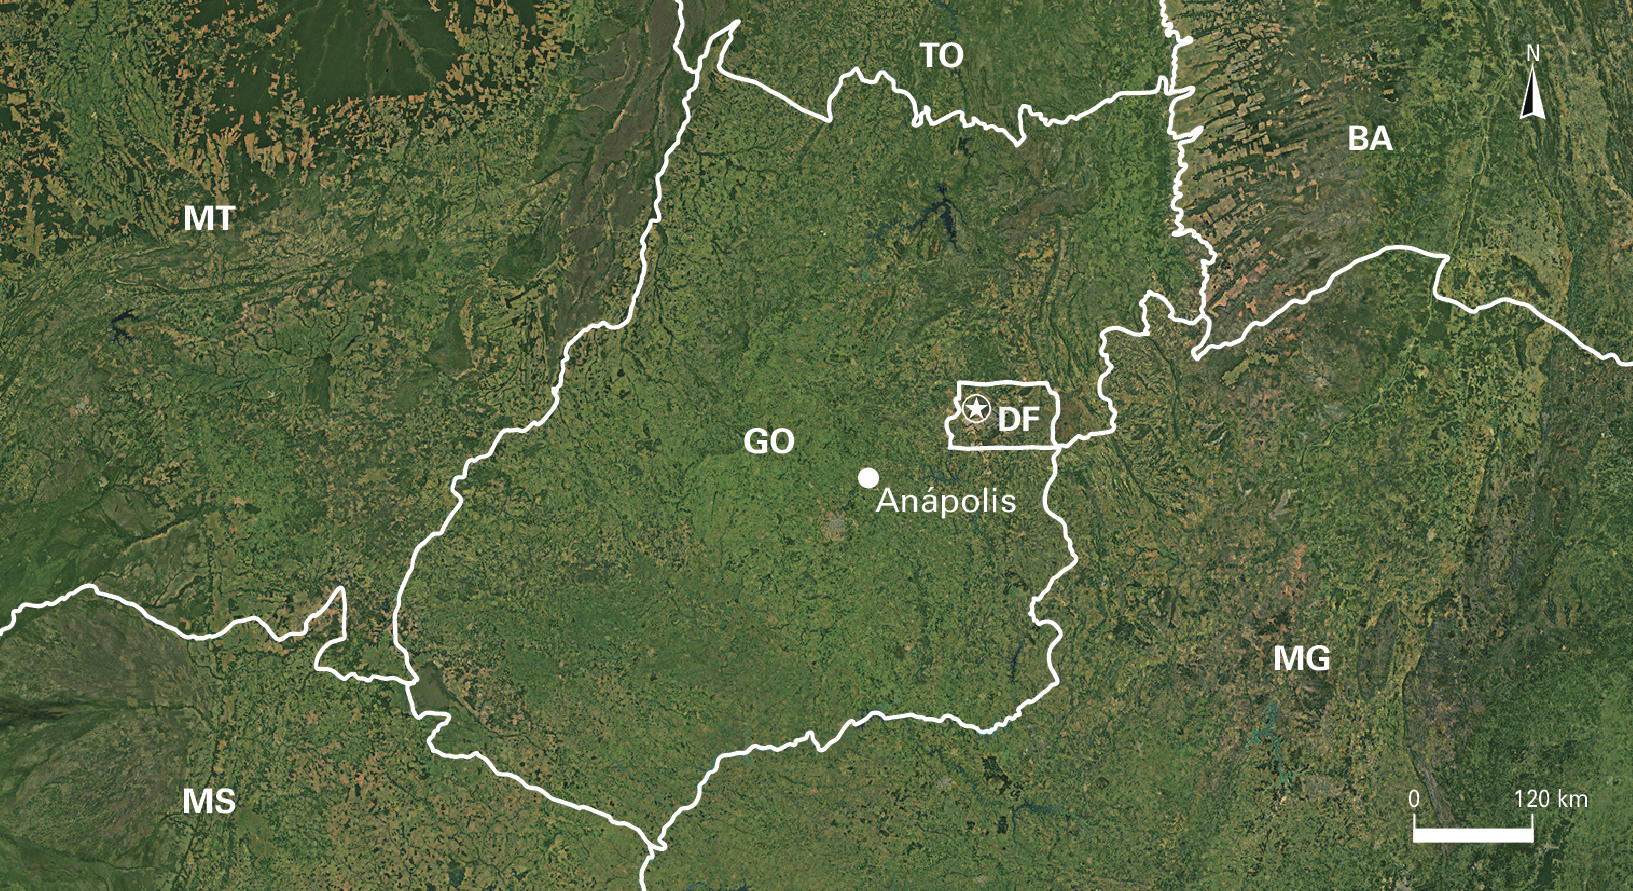 Fotografia D. Imagem de satélite. Destaque para o estado de Goiás com um ponto indicando Anápolis ao sul do Distrito Federal. No canto superior direito, seta apontando para o norte e abaixo, a escala: 120 quilômetros por centímetro.